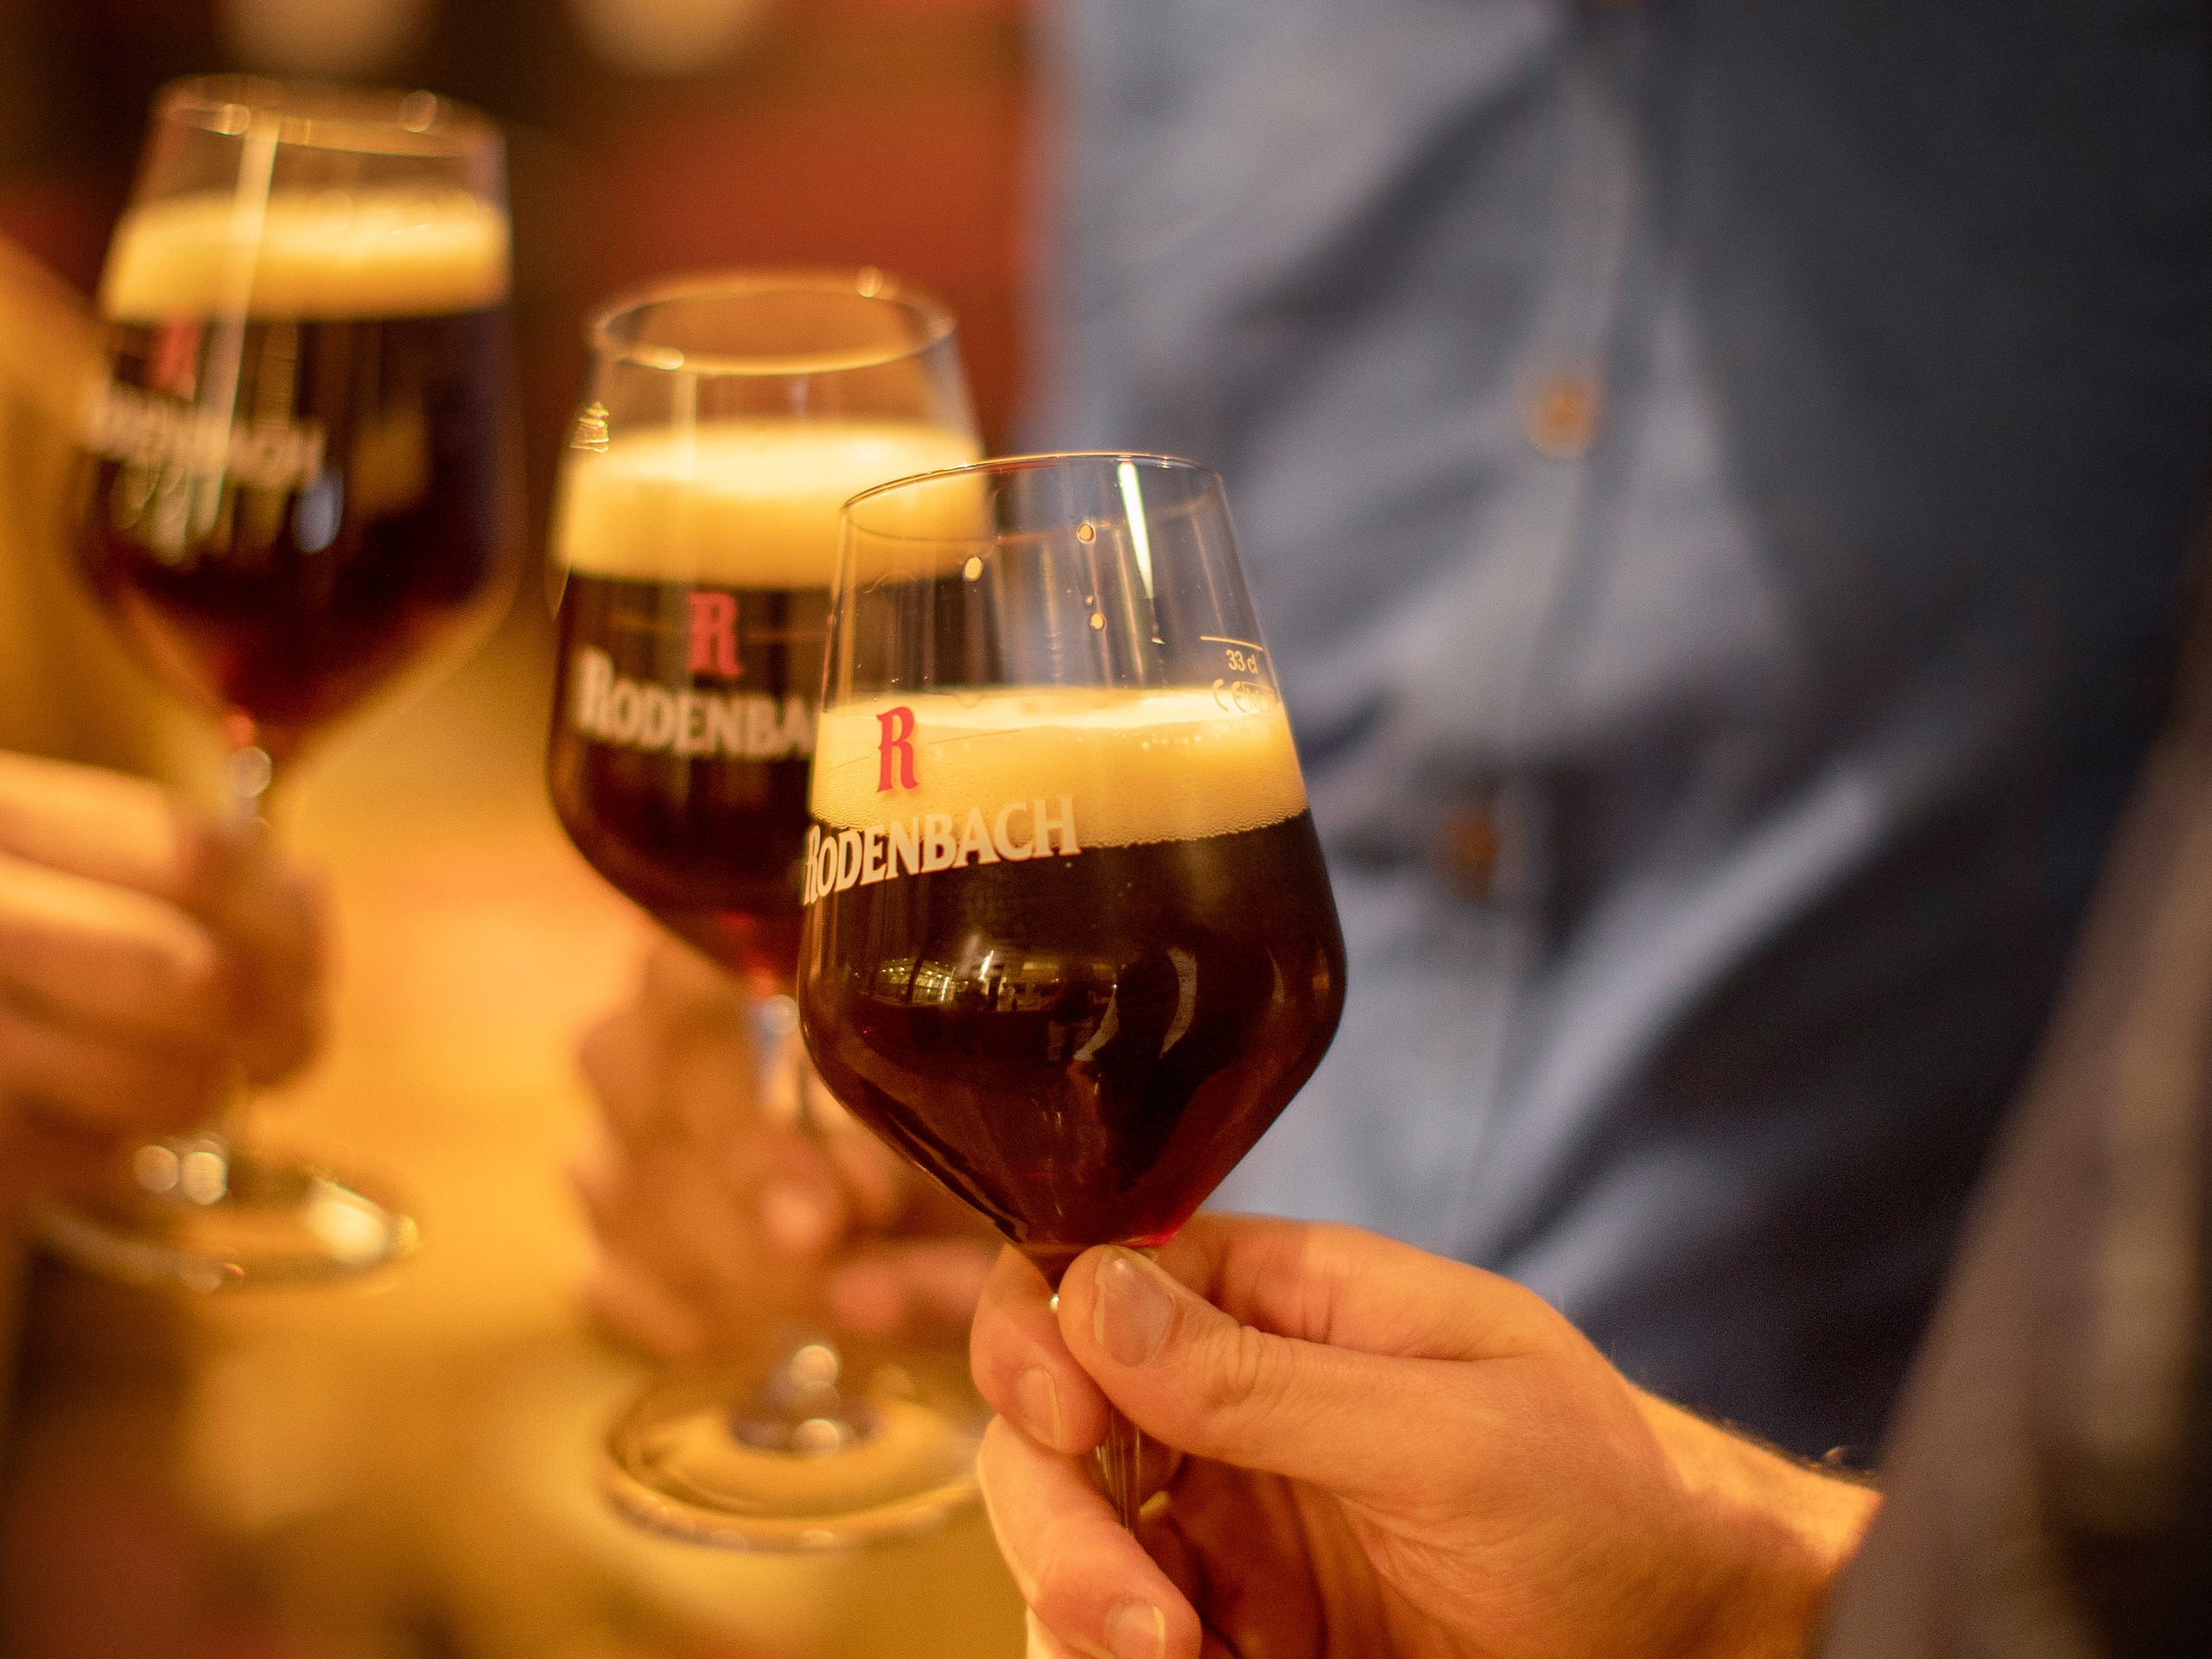 Local beer tasking in Flanders